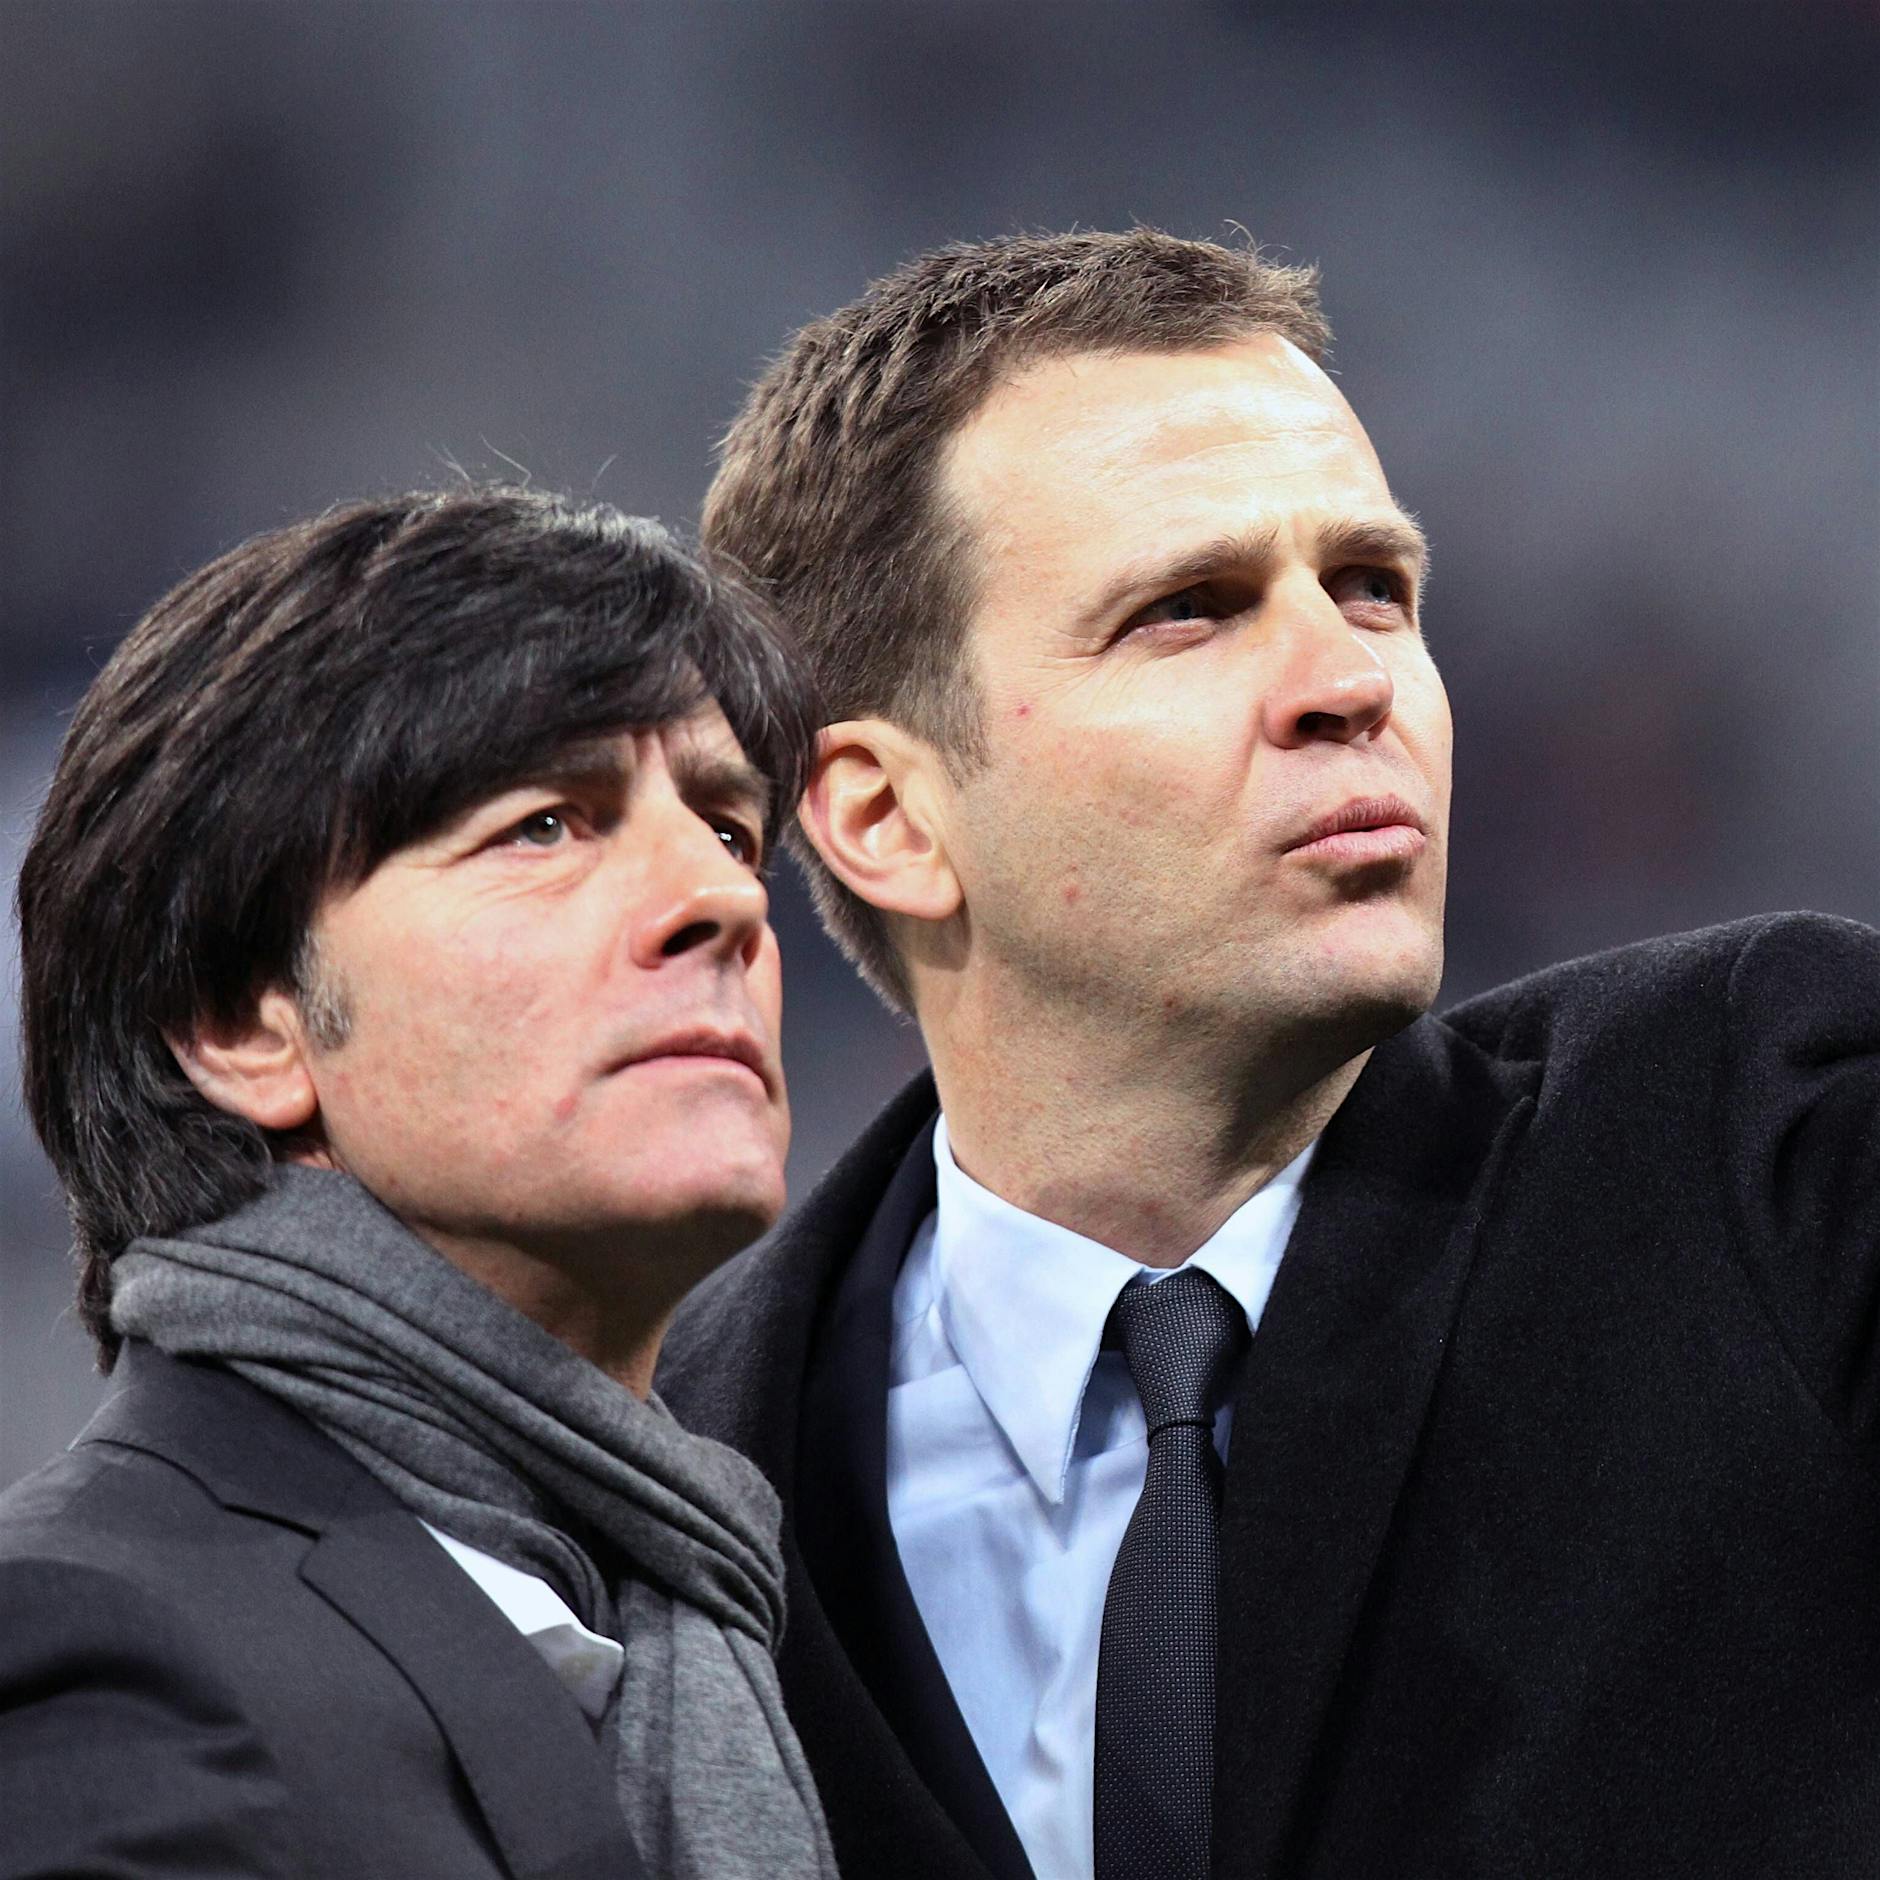 Image - Vor dem Auftakt der EM: Die deutsche Nationalmannschaft ist in der Bringschuld